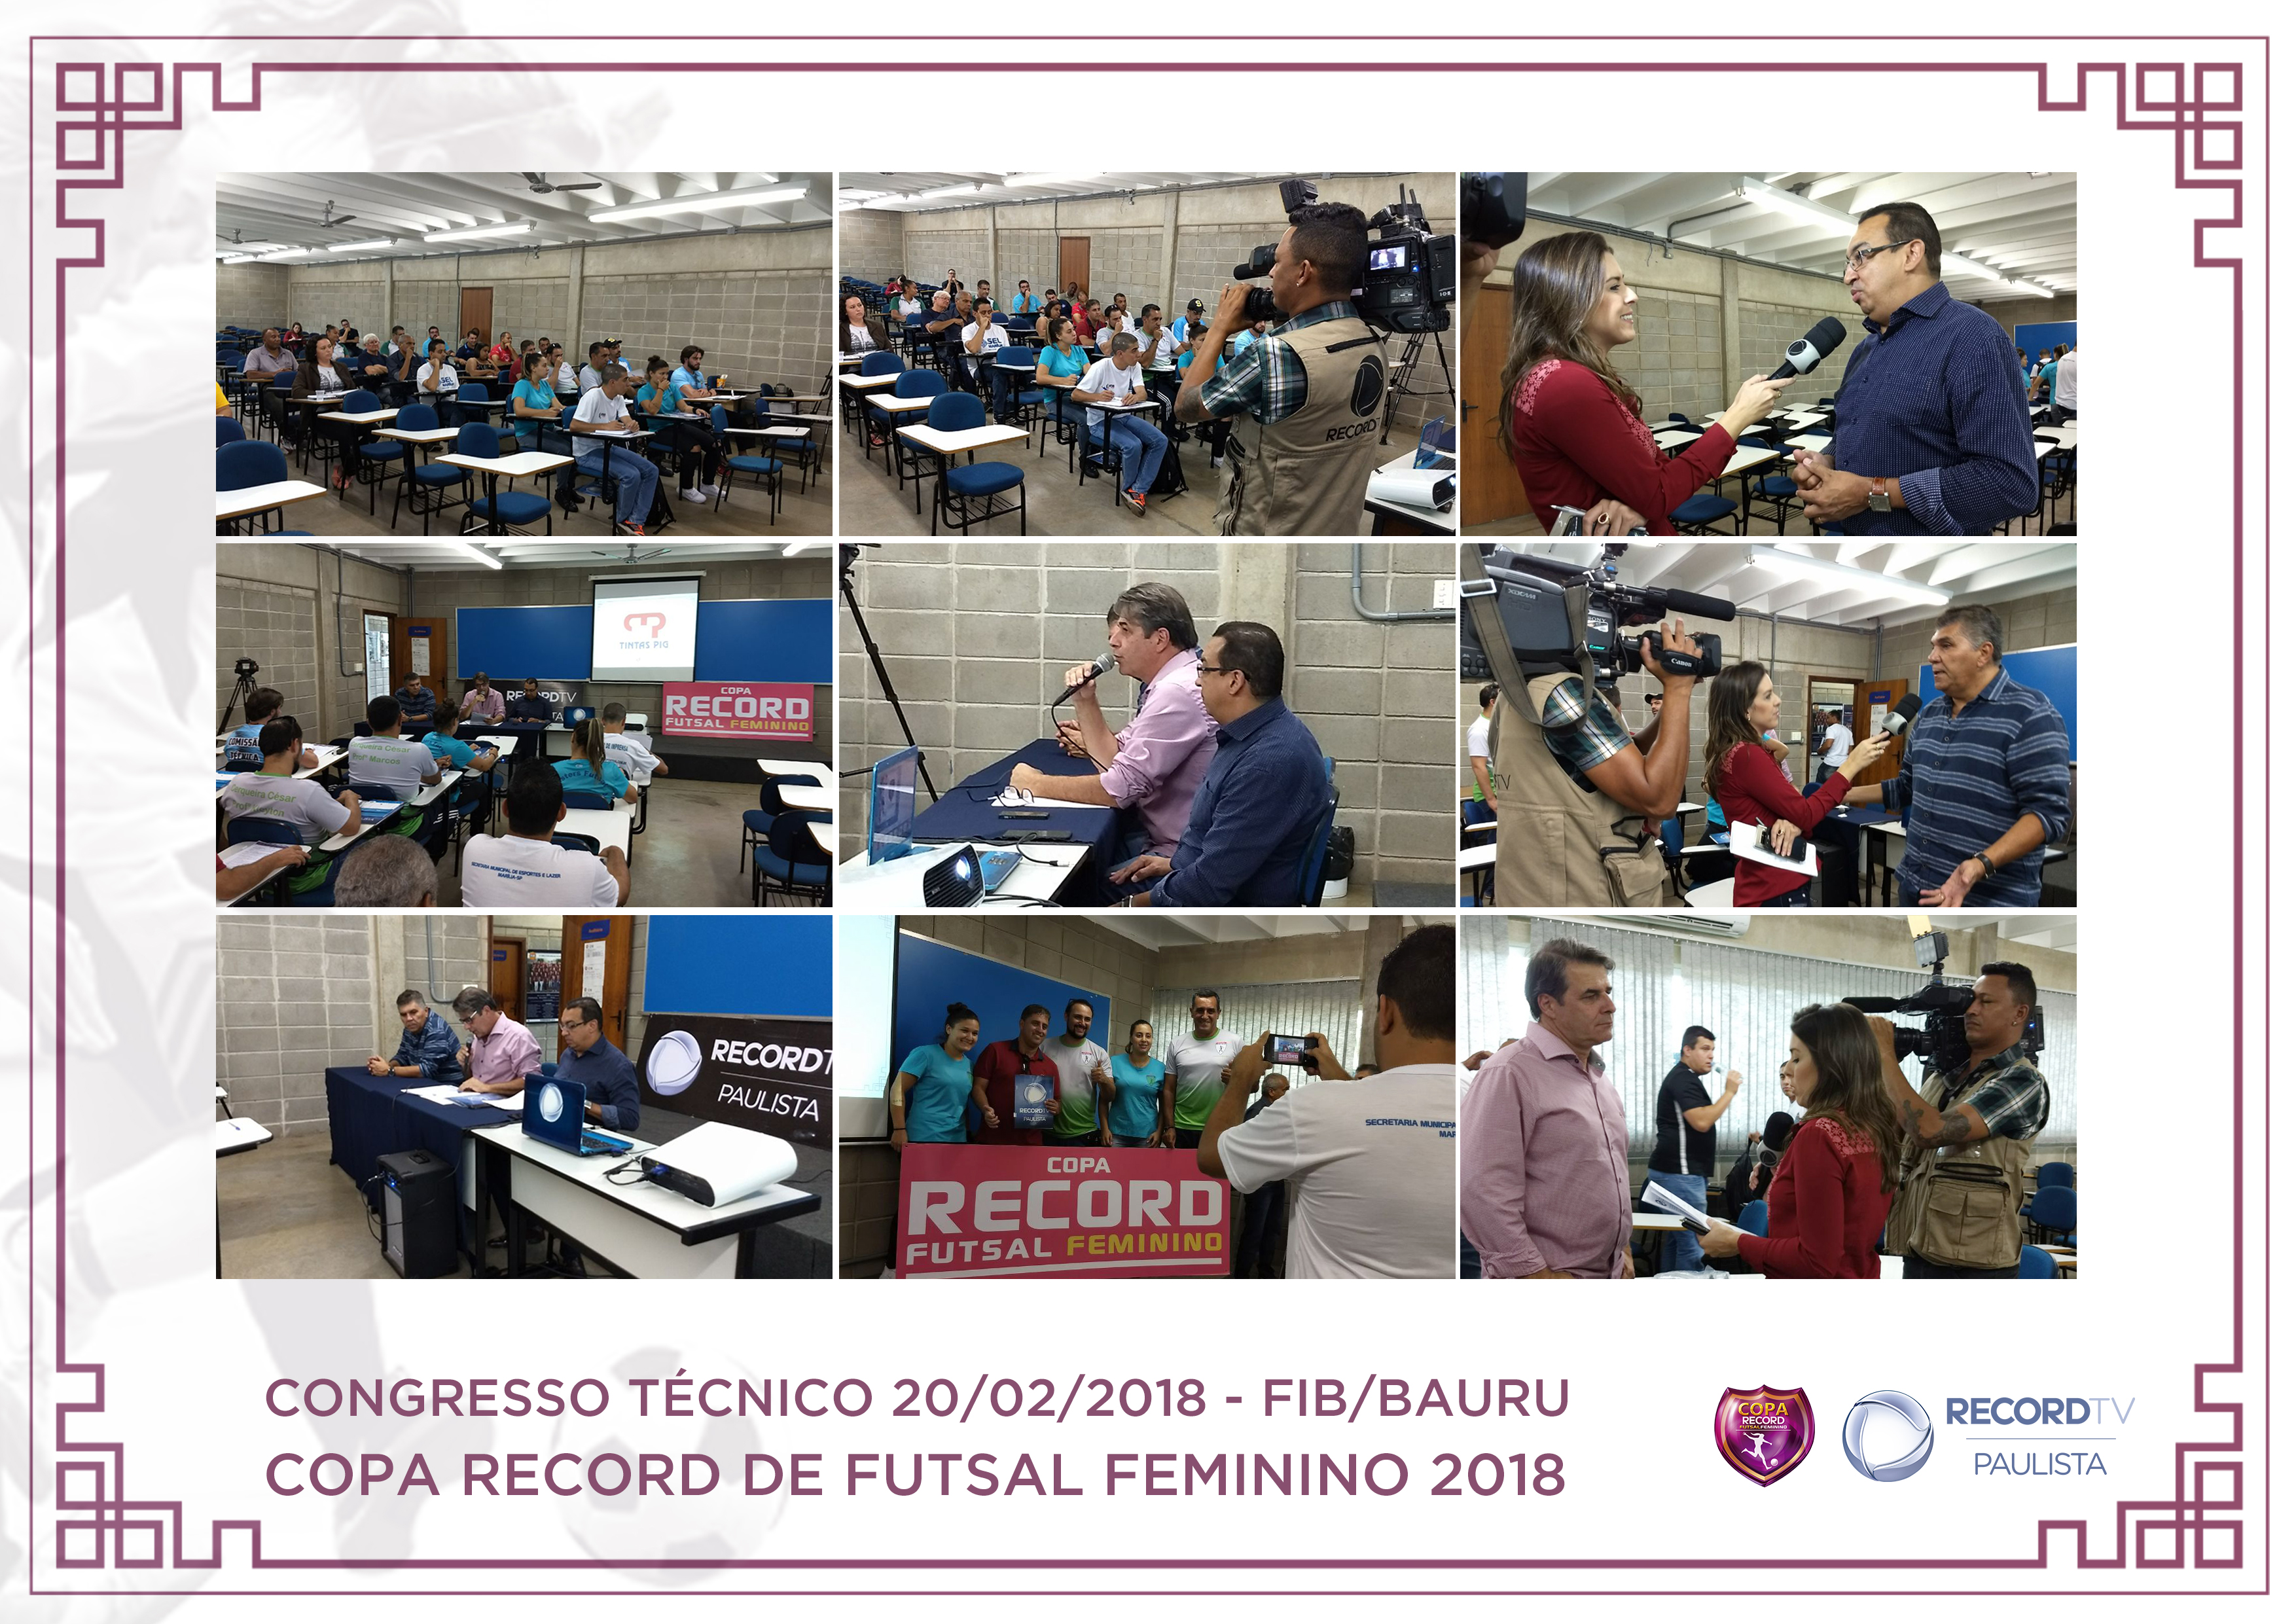 Congresso Técnico - Copa Record de Futsal Feminino 2018